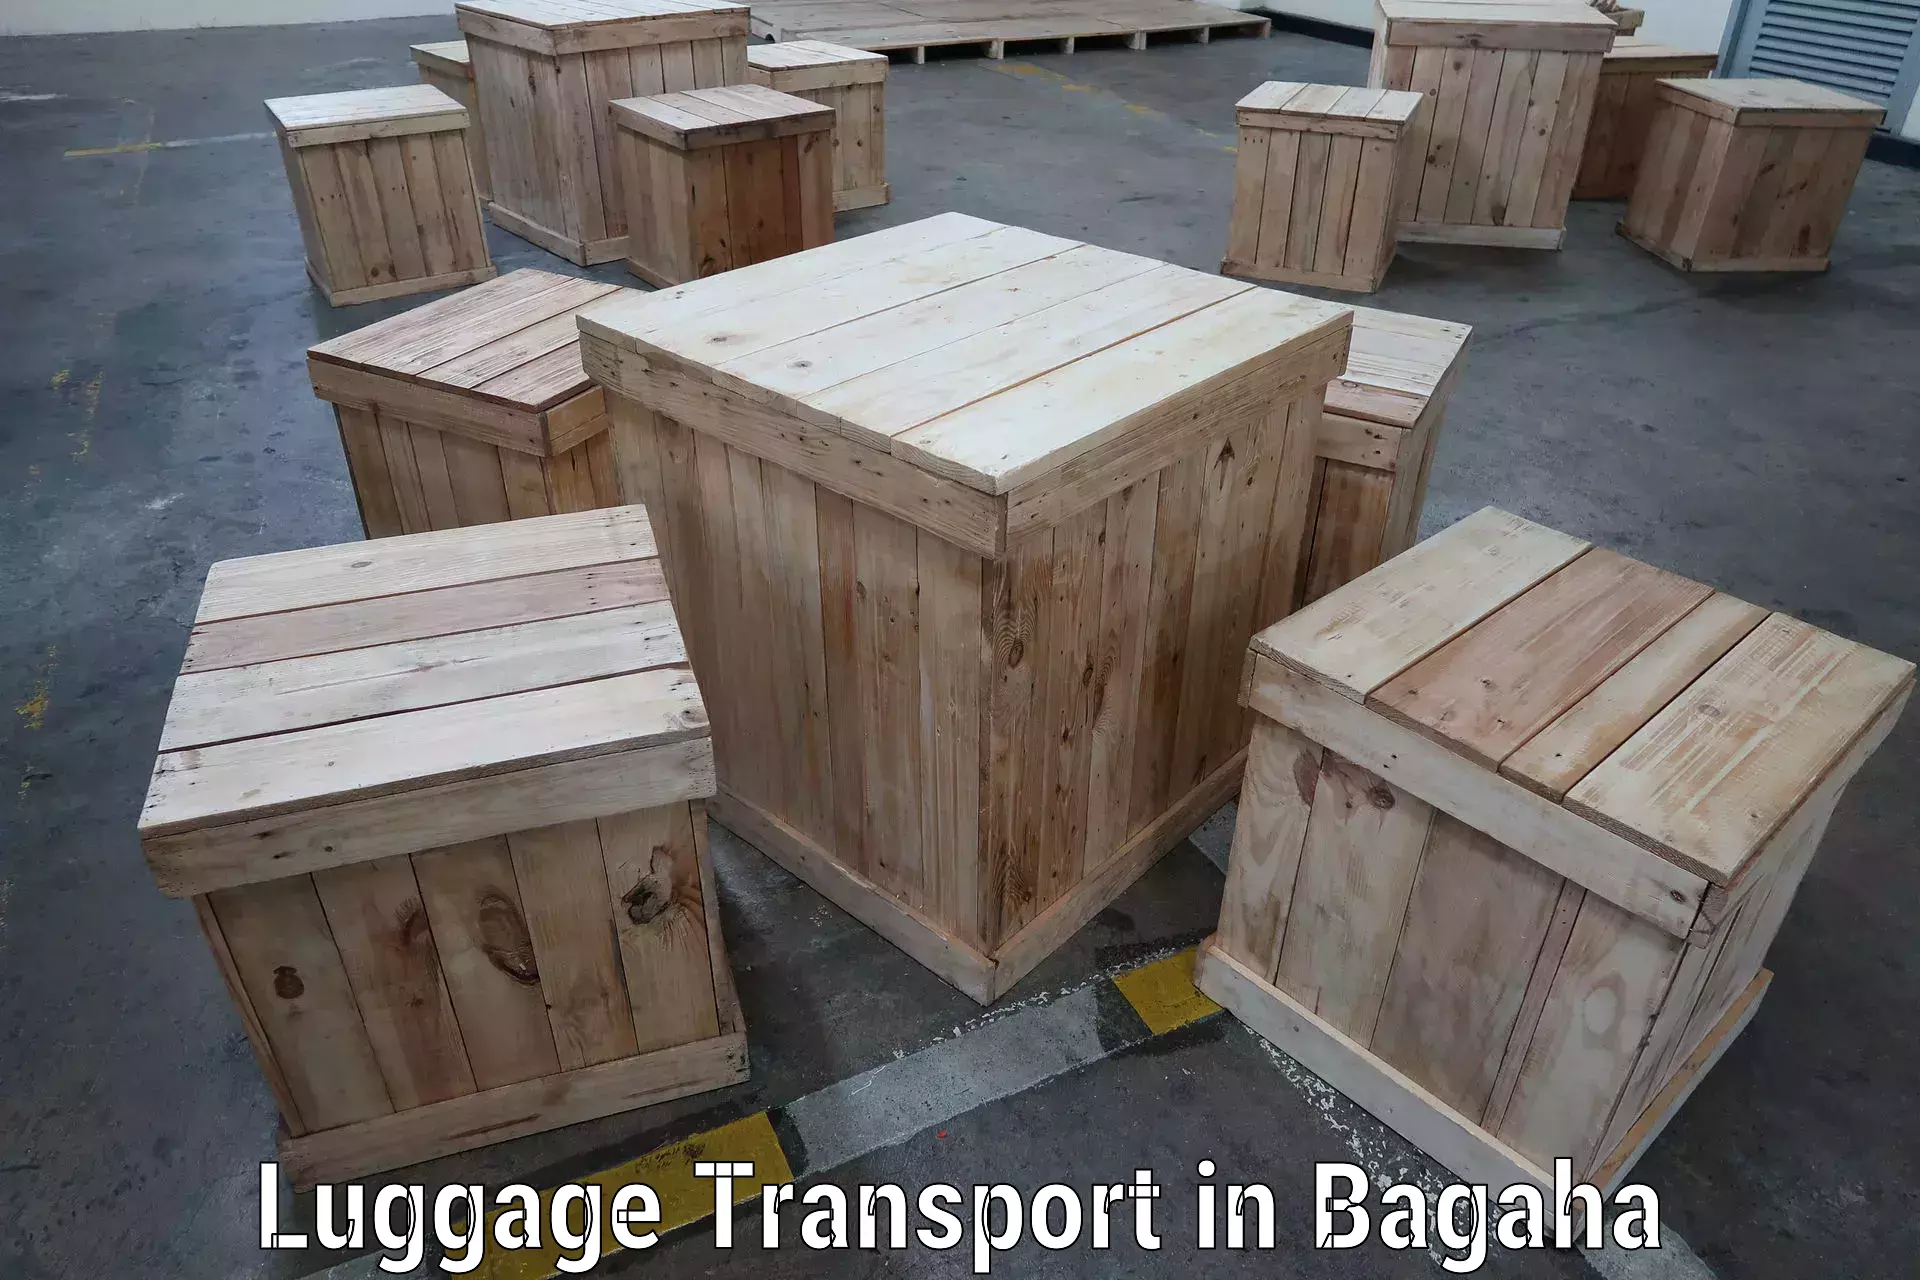 Bulk luggage shipping in Bagaha